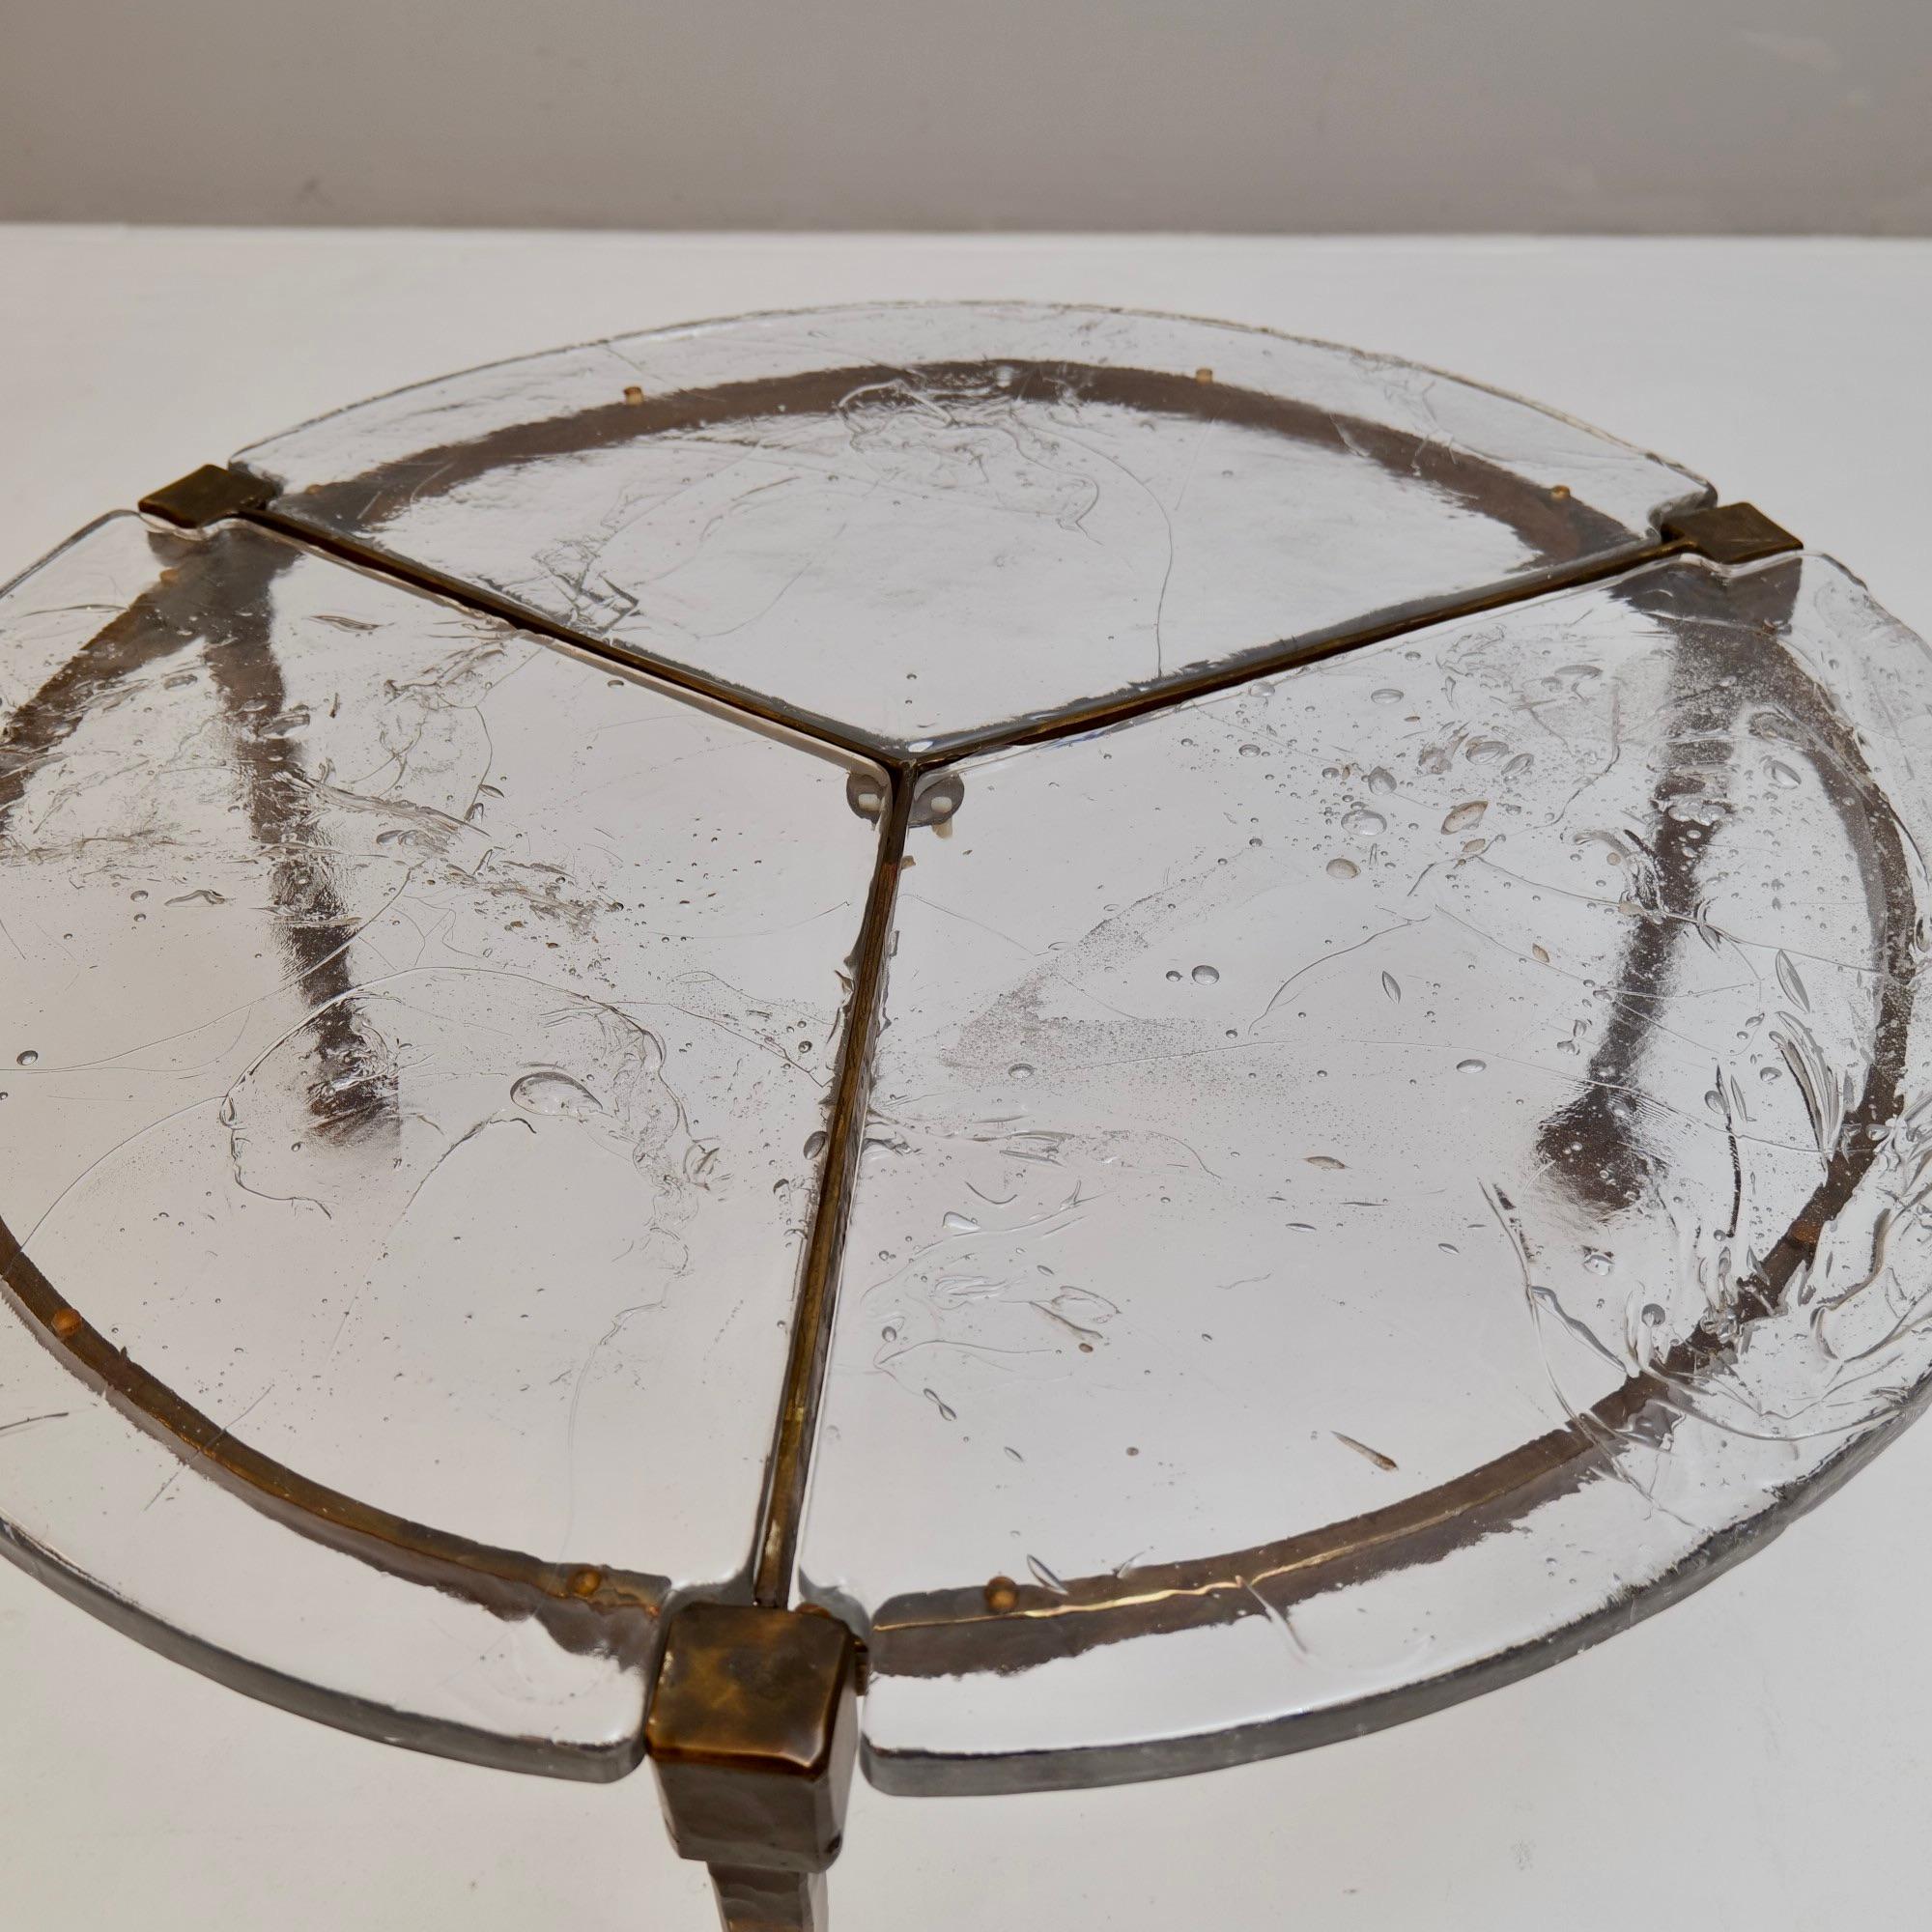 Geschmiedeter Tisch aus Bronze und Glas von Lothar Klute – 1980er Jahre (Gegossen)